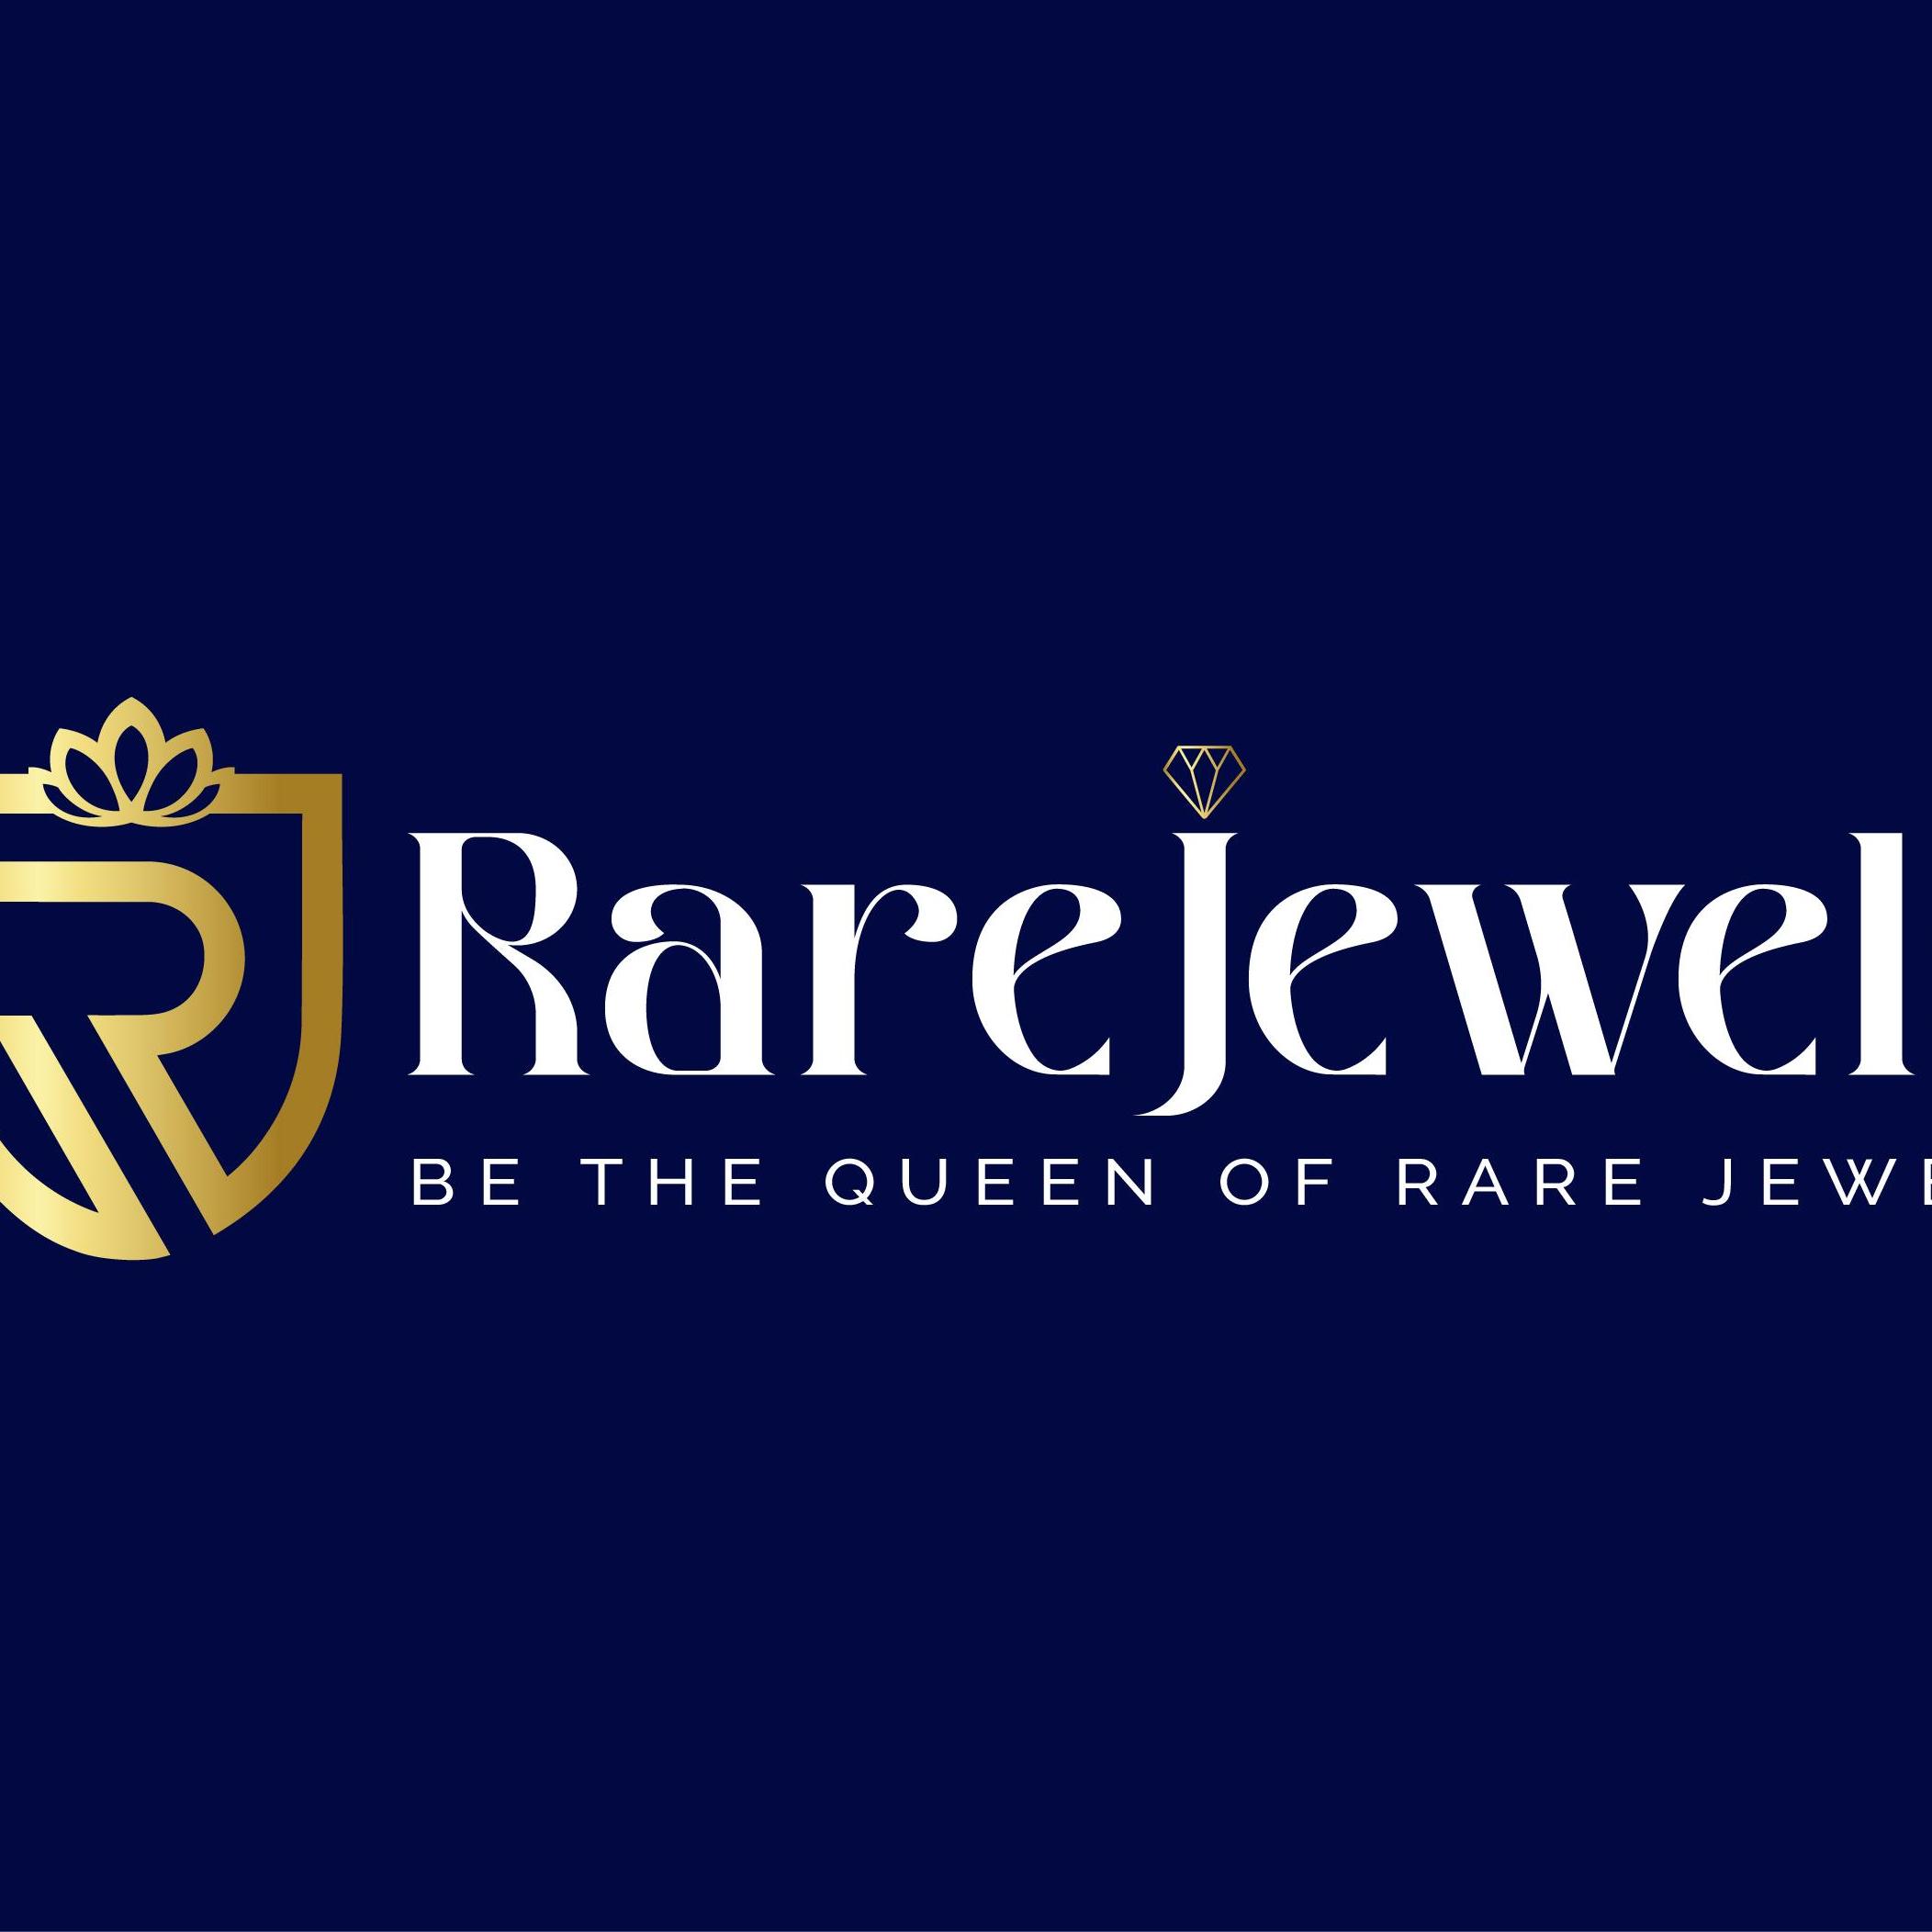 rare jewellers